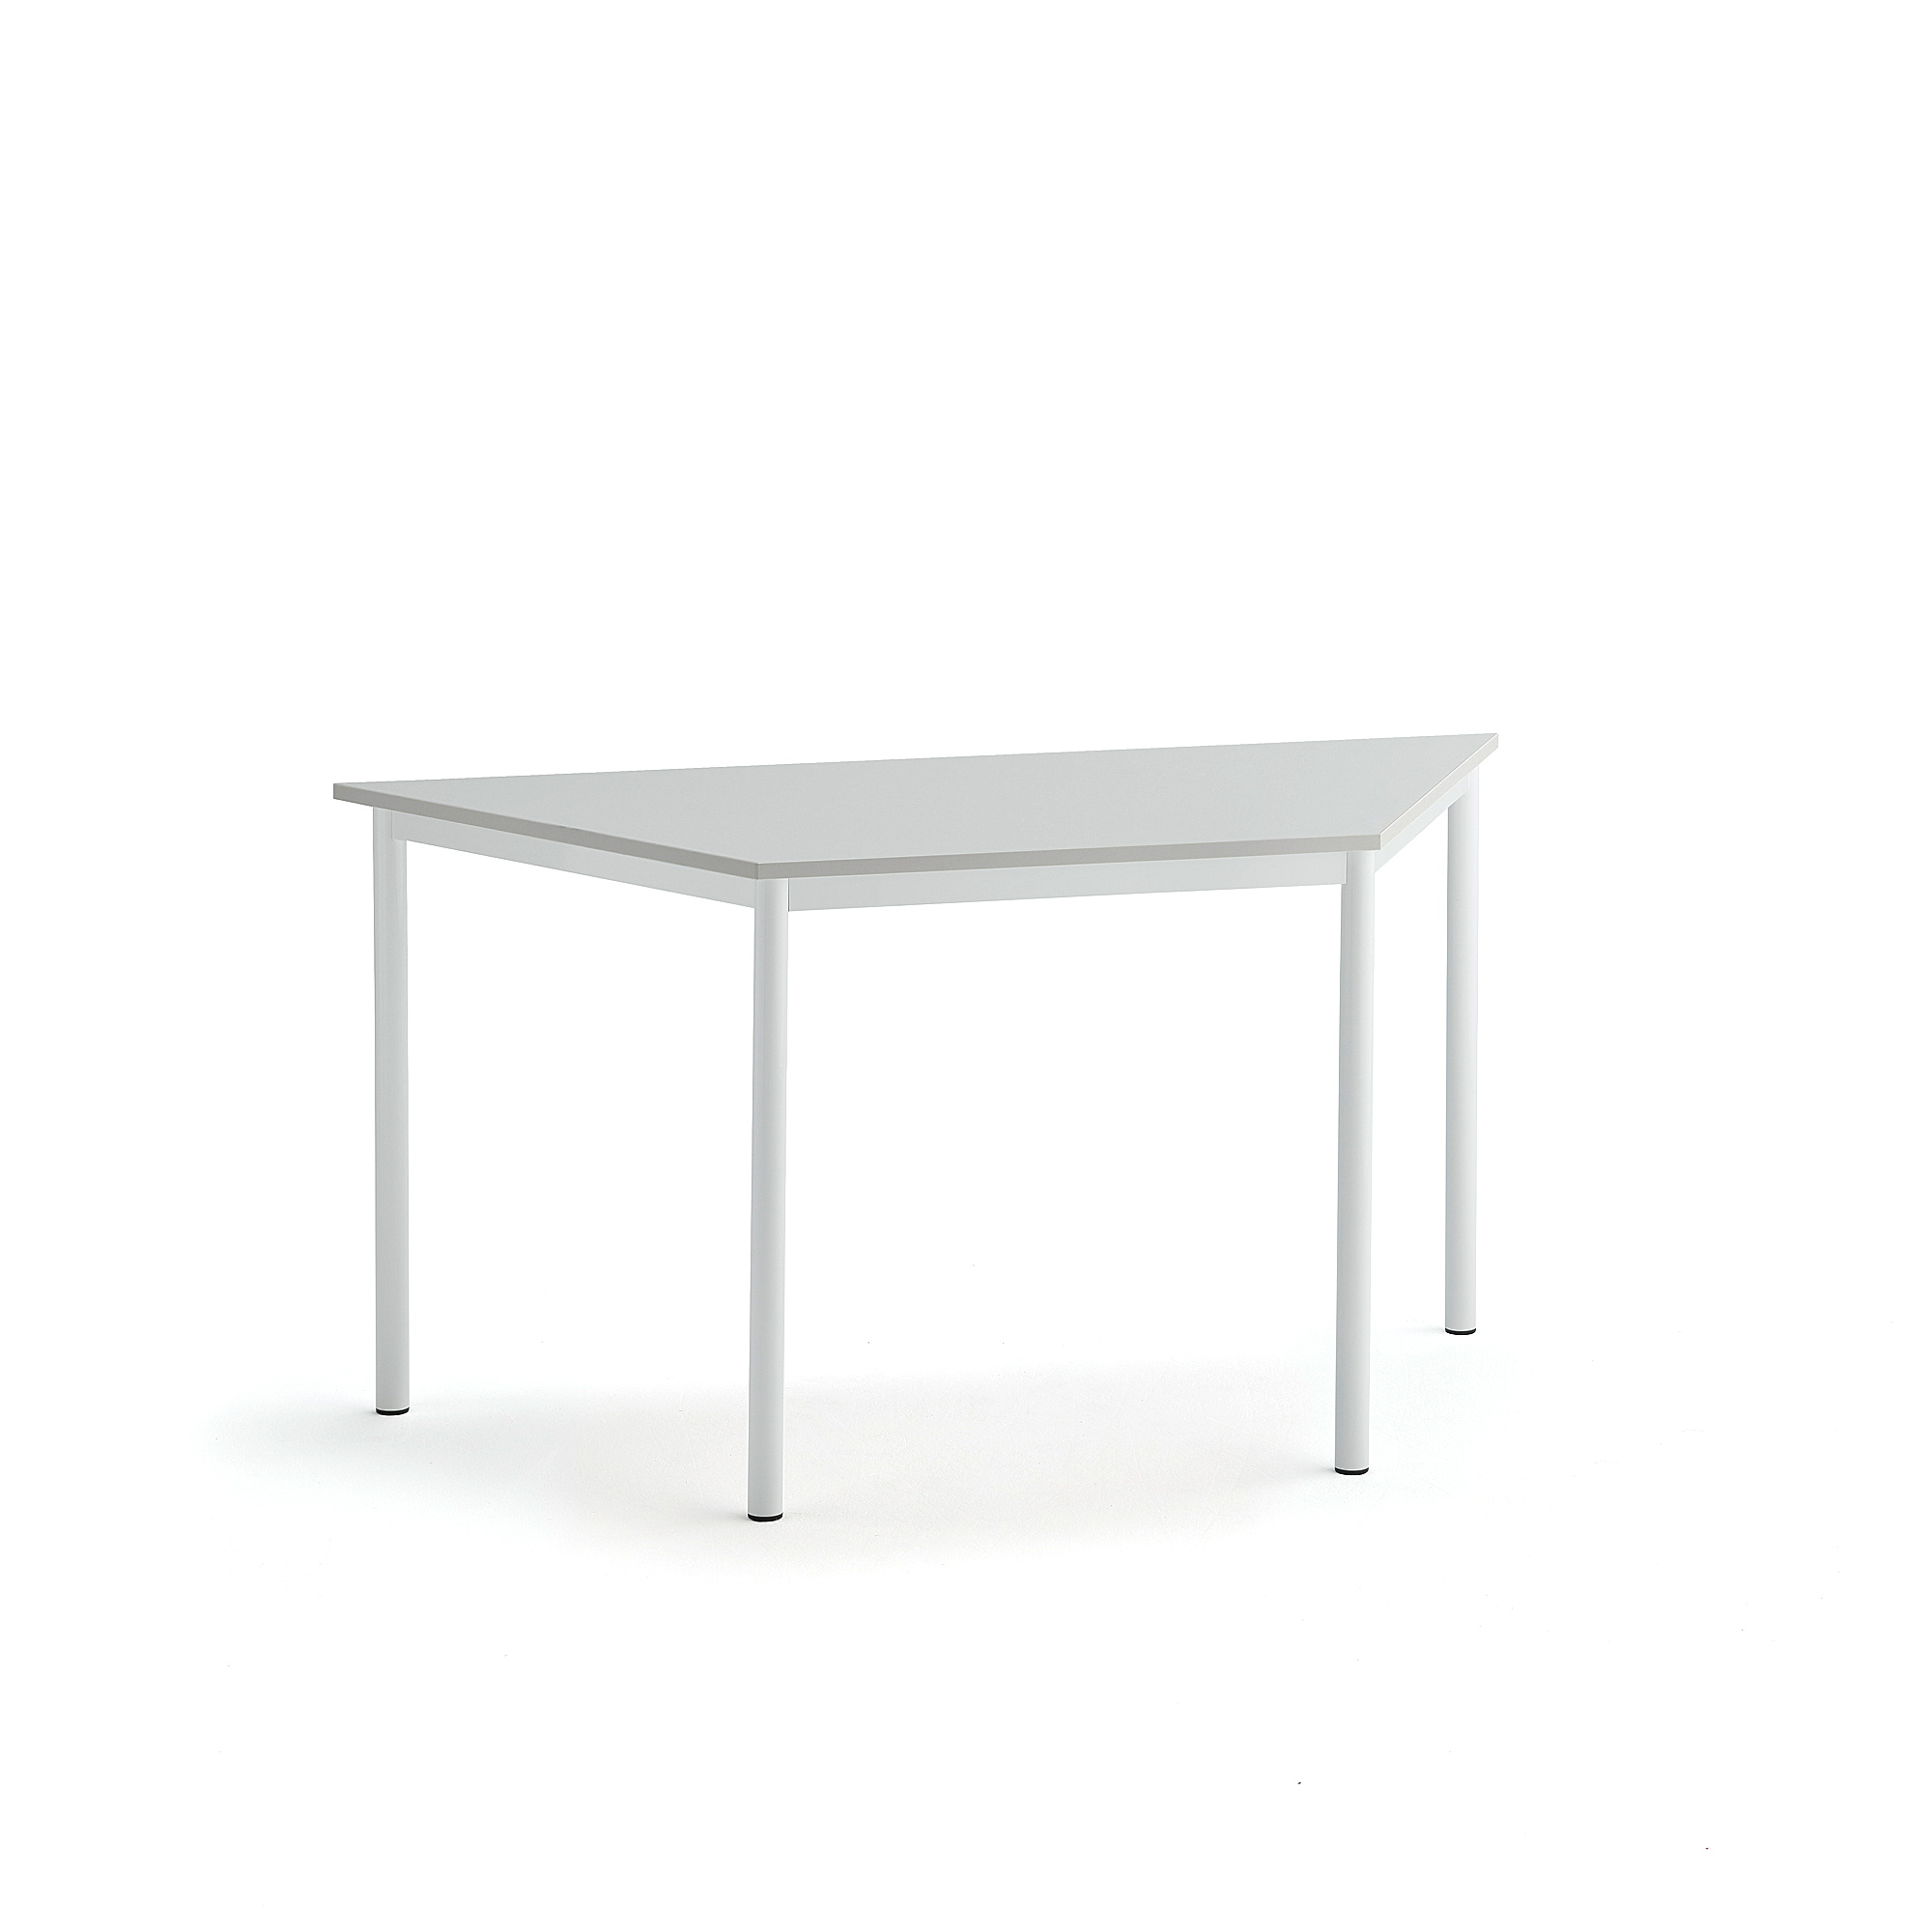 Stůl SONITUS TRAPETS, 1400x700x720 mm, bílé nohy, HPL deska tlumící hluk, šedá